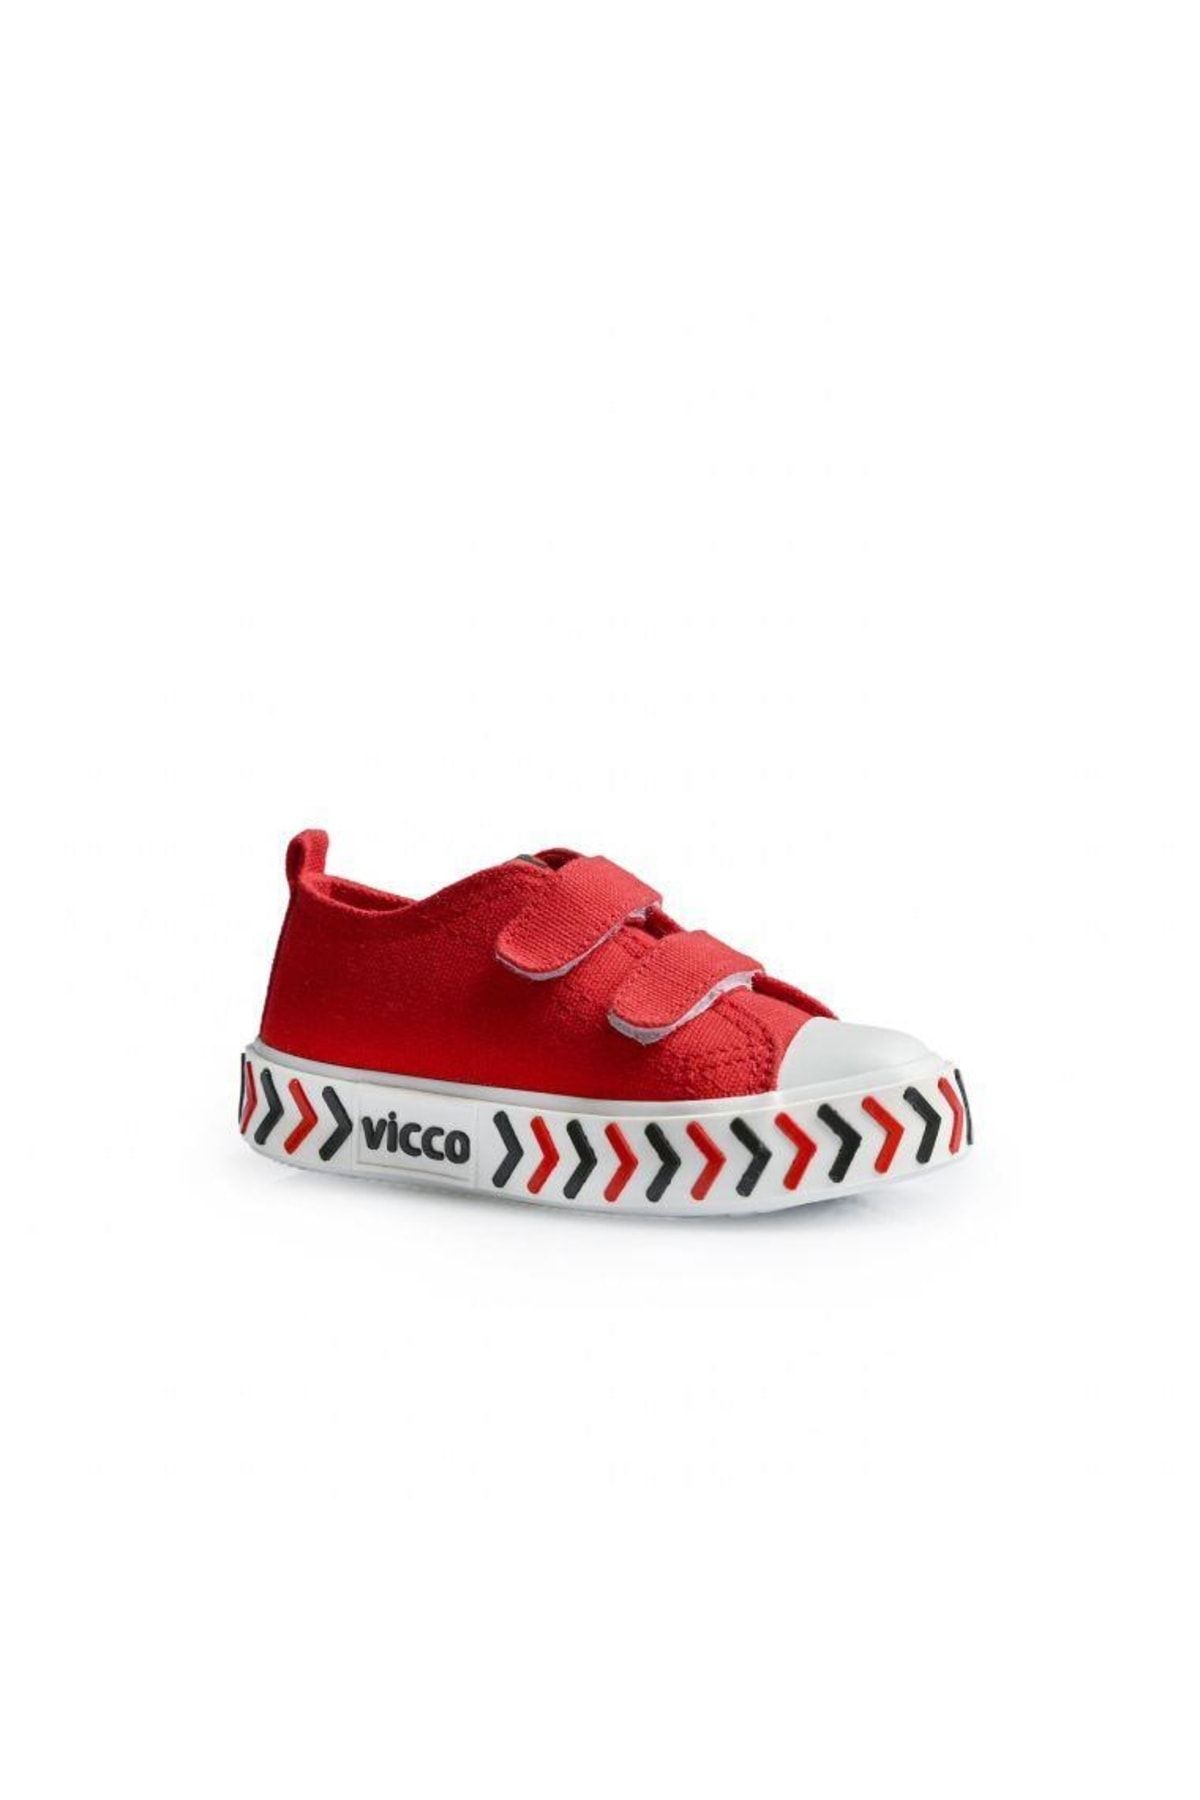 Vicco Unisex Keten Çocuk Spor Ayakkabı